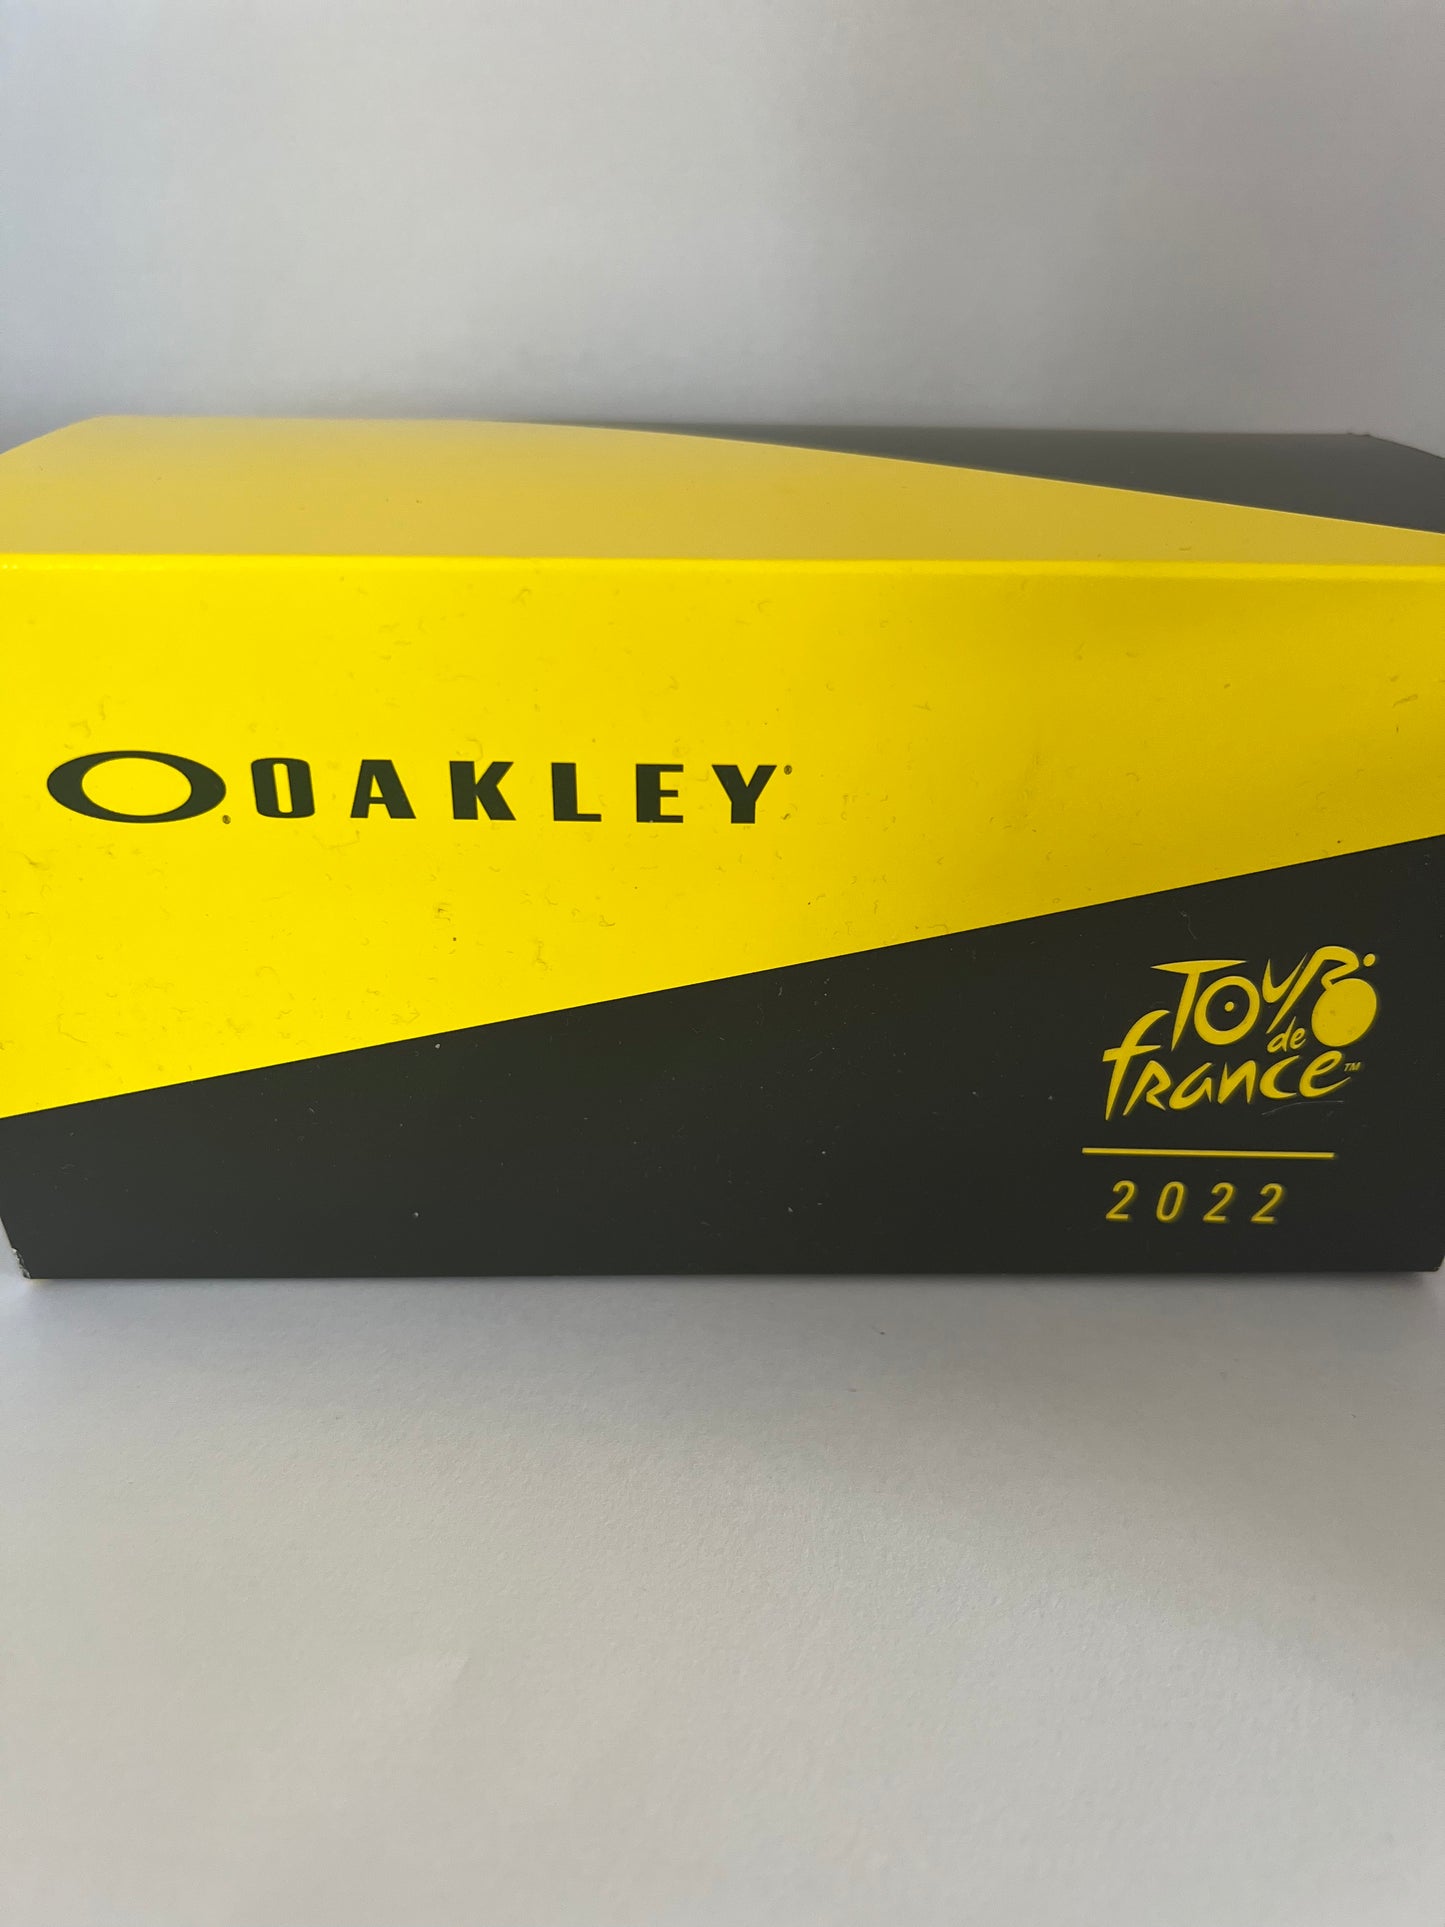 Oakley Sutro Lite Edition Tour de France 22 with Prizm lens